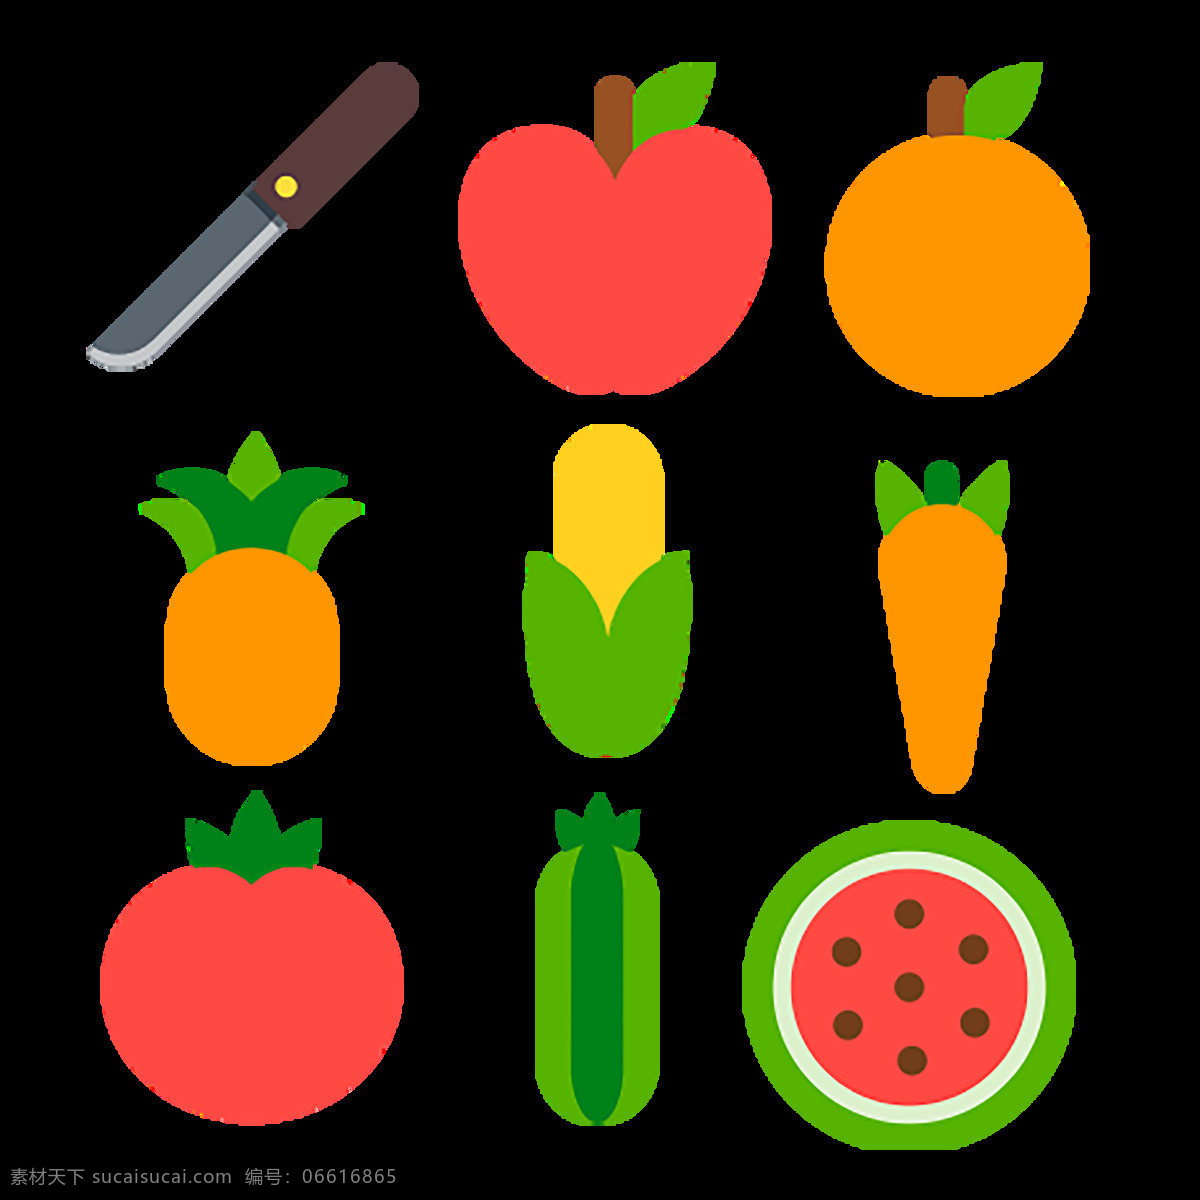 水果图标集 健康 健康食品 桔子 梨 柠檬 苹果 热带 食品 图标 水果 图标下载 网页图标 创意图标